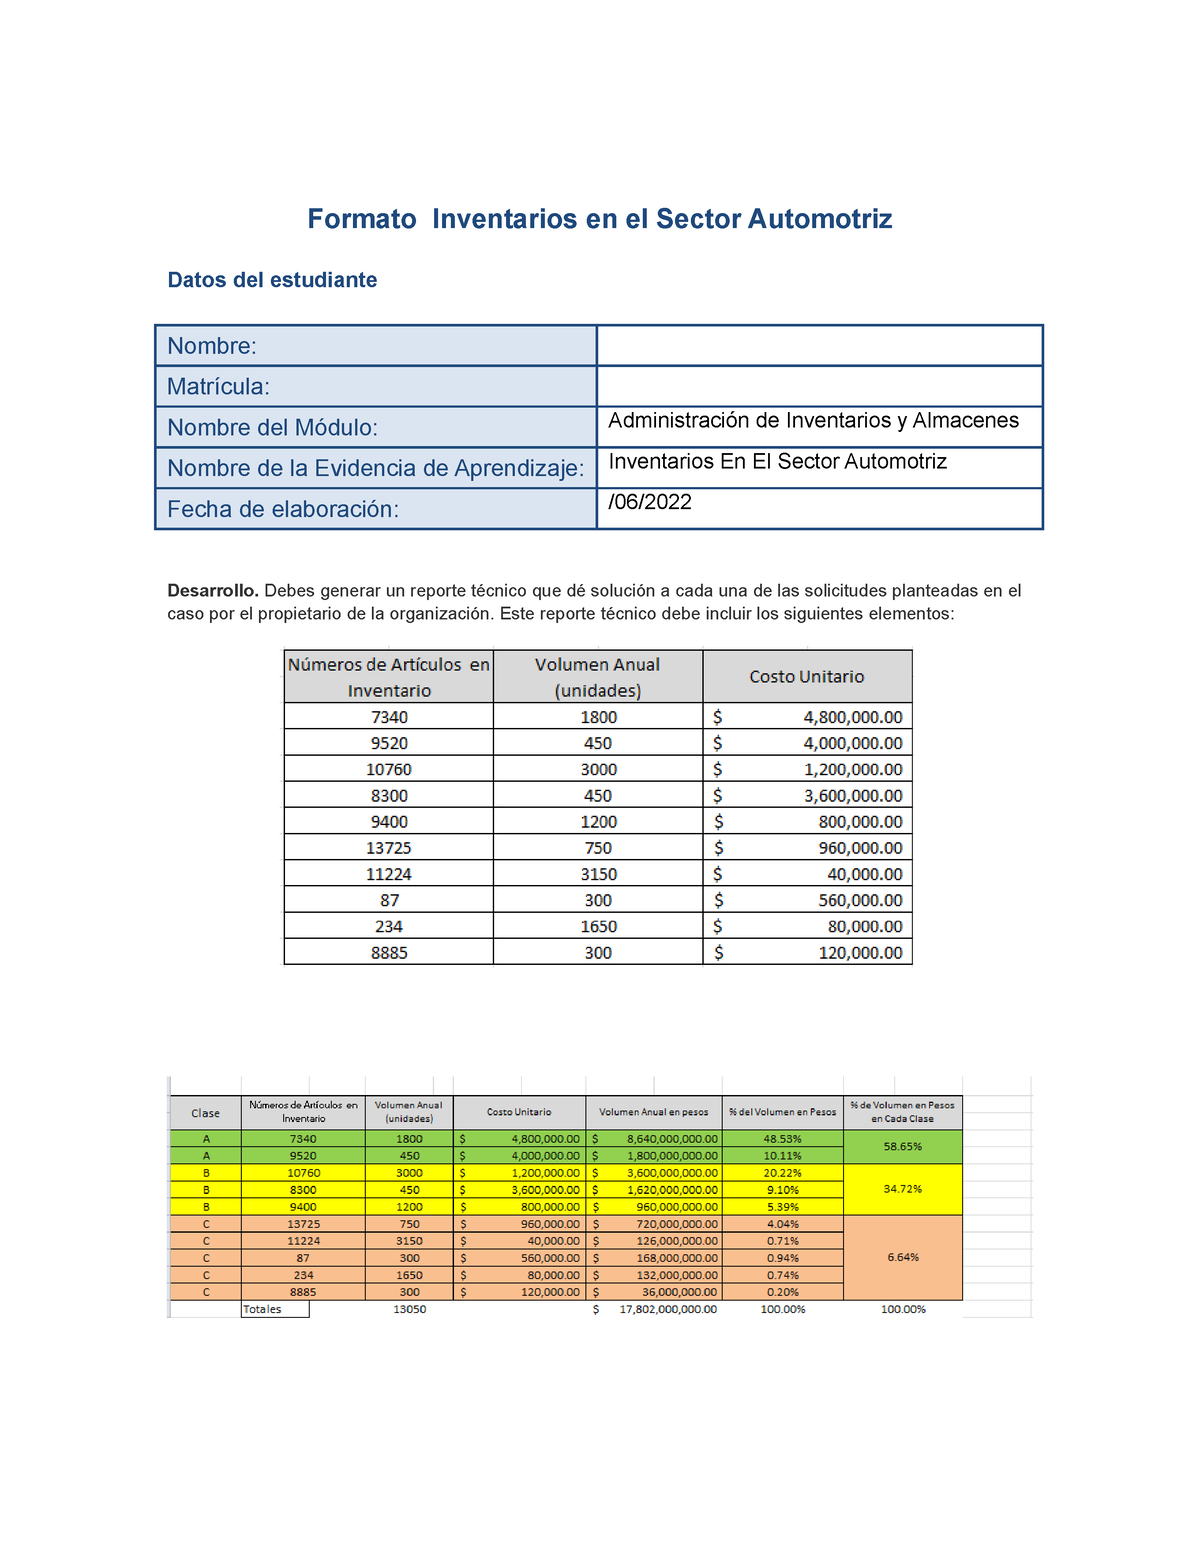 Inventario En El Sector Automotriz Ea 2 Formato Inventarios En El Sector Automotriz Datos Del 5997